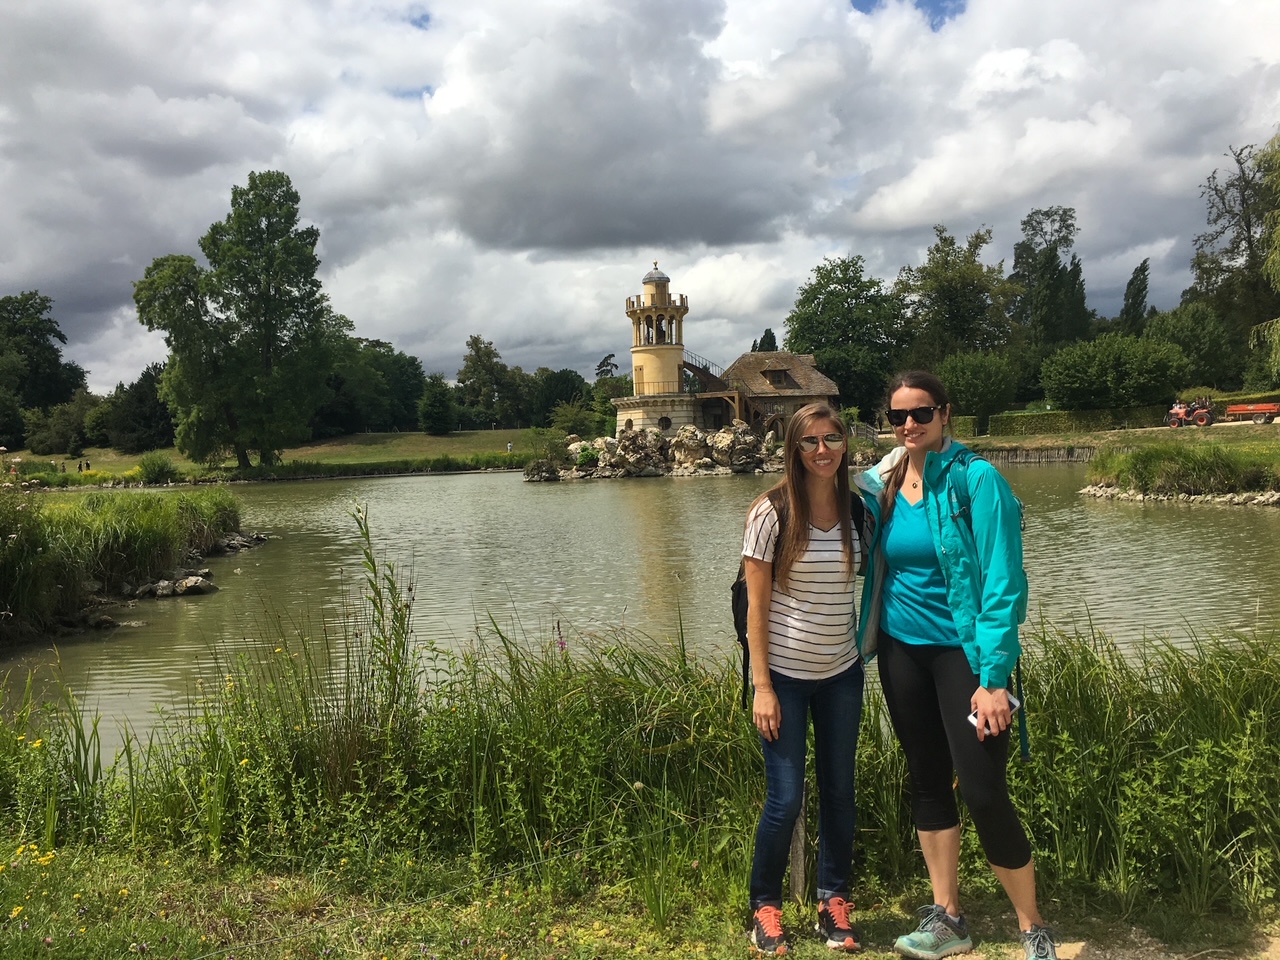 Le Hameau de la Reine, our favorite spot during our visit to Versailles